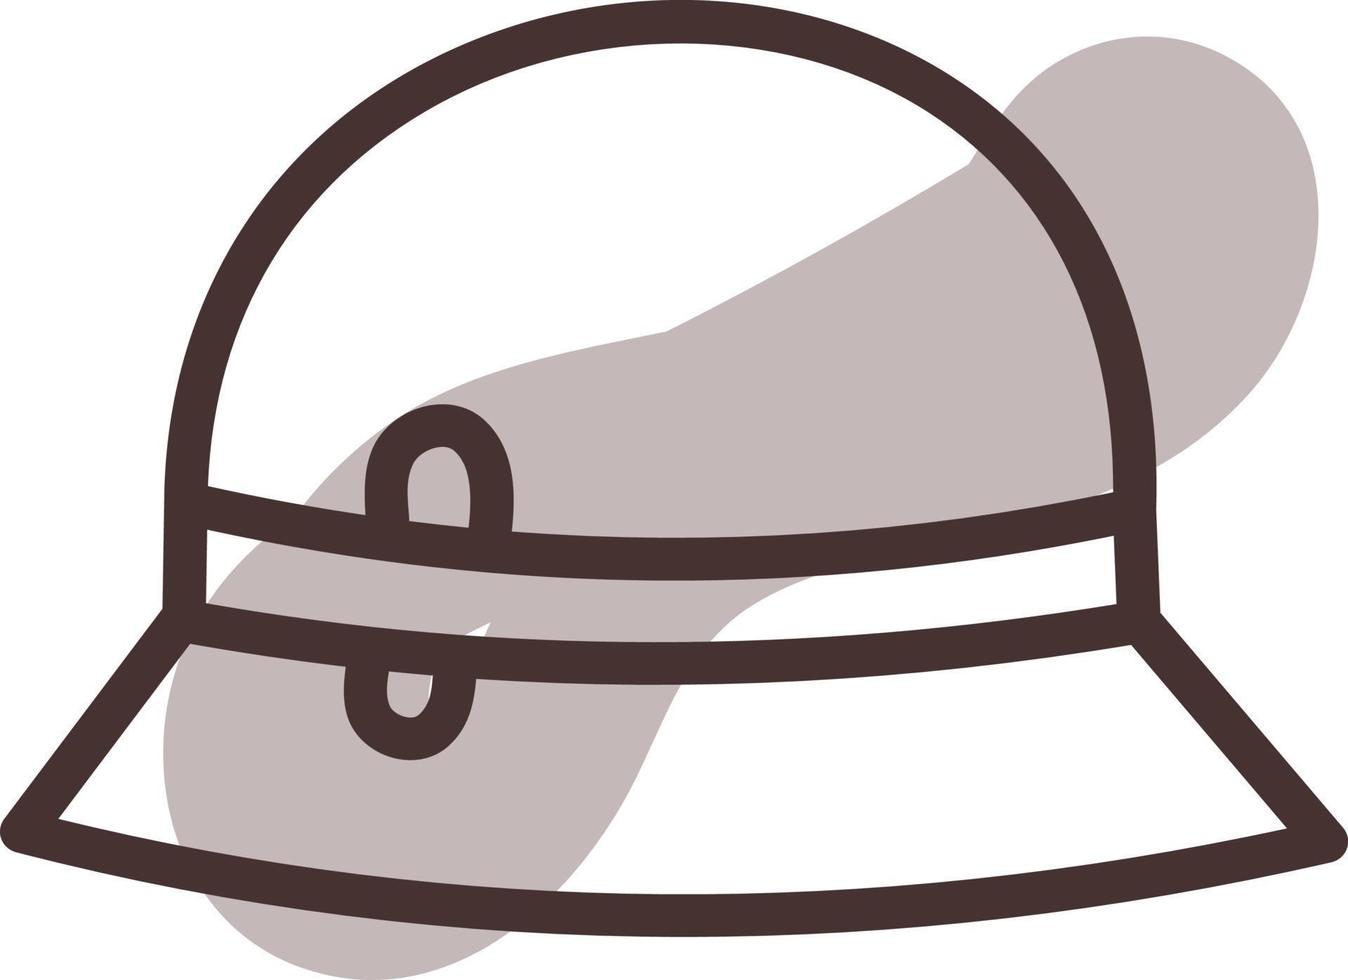 sombrero de mujer marrón, ilustración, vector sobre fondo blanco.